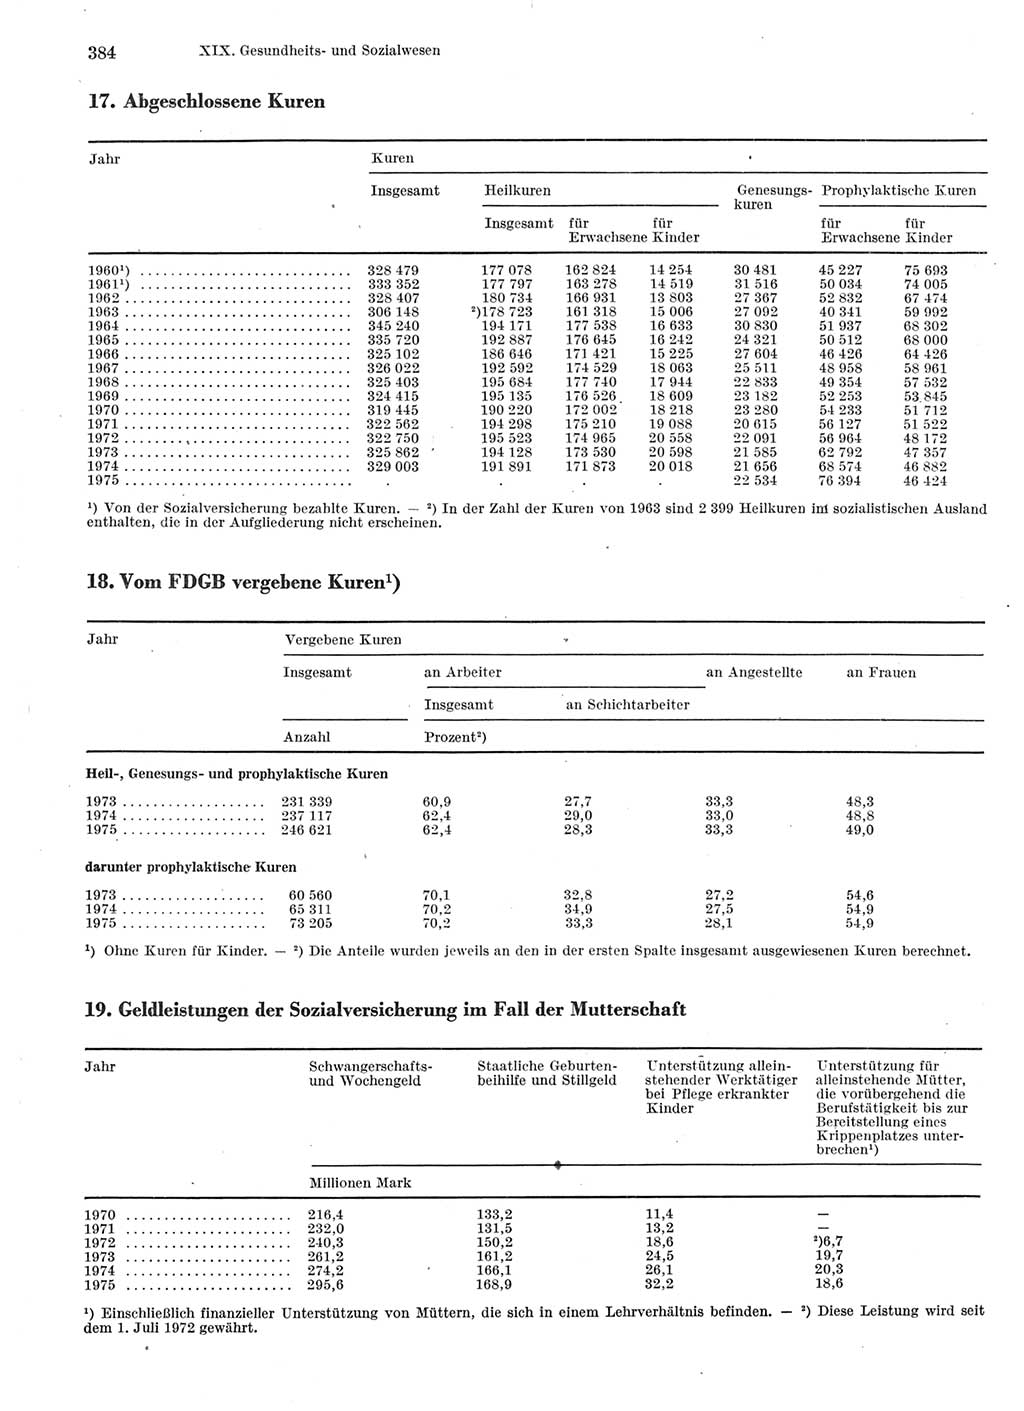 Statistisches Jahrbuch der Deutschen Demokratischen Republik (DDR) 1976, Seite 384 (Stat. Jb. DDR 1976, S. 384)